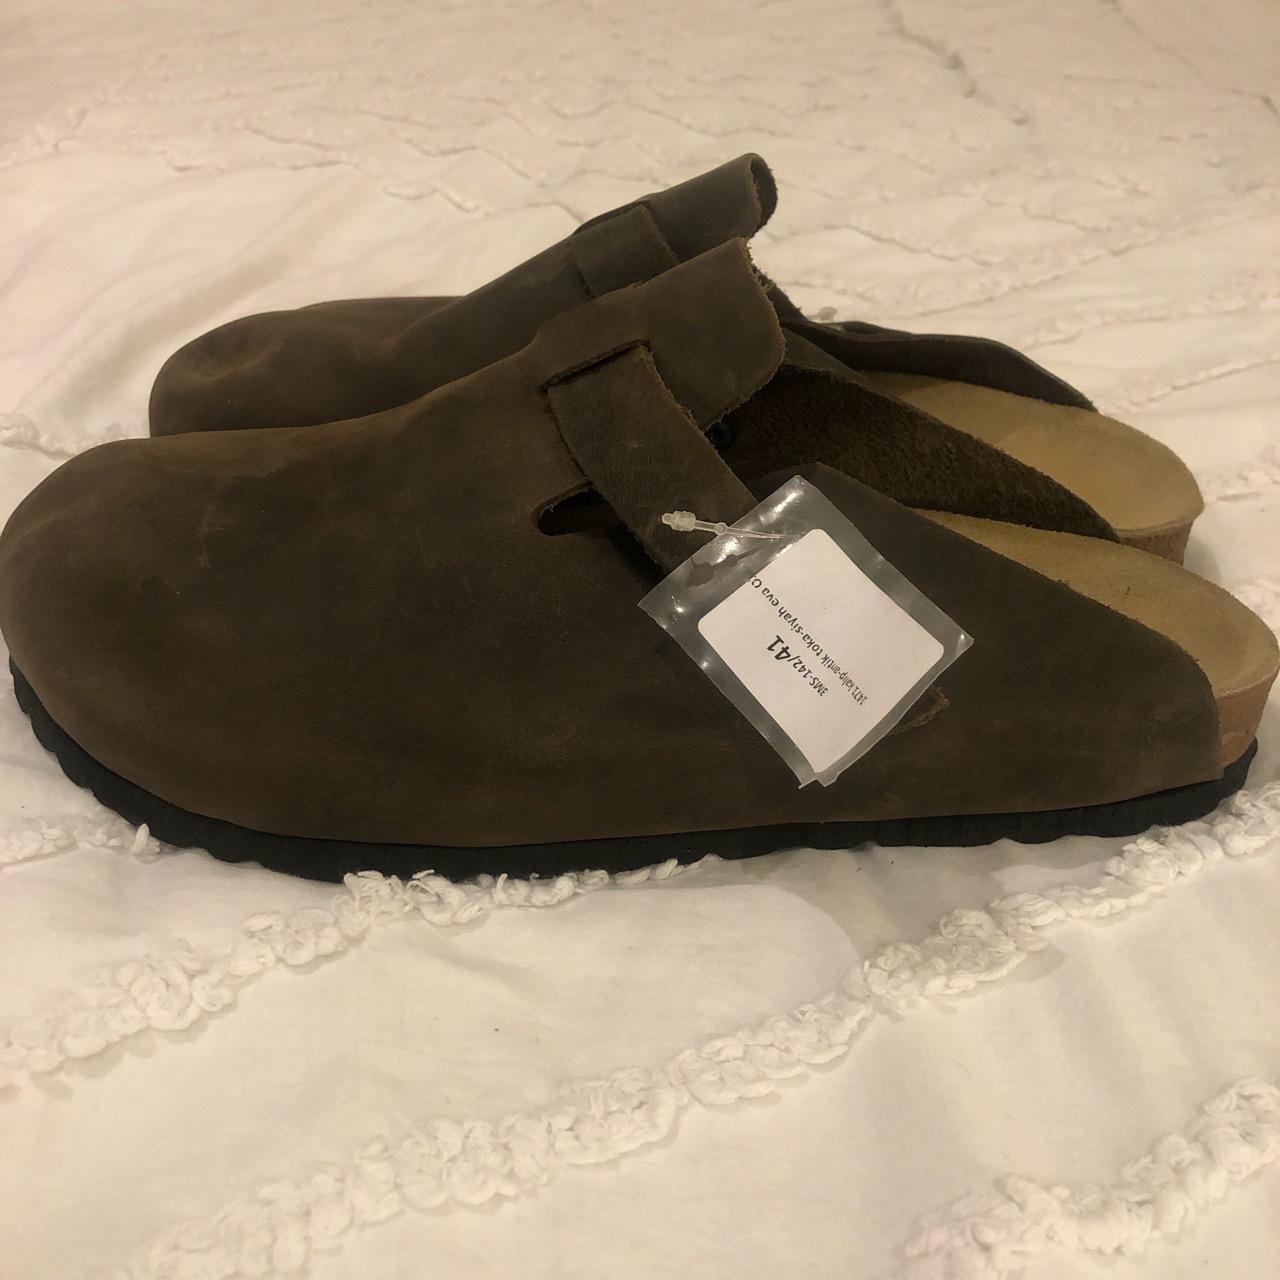 Moosefield Sandals - Boston Birkenstock Style Size... - Depop